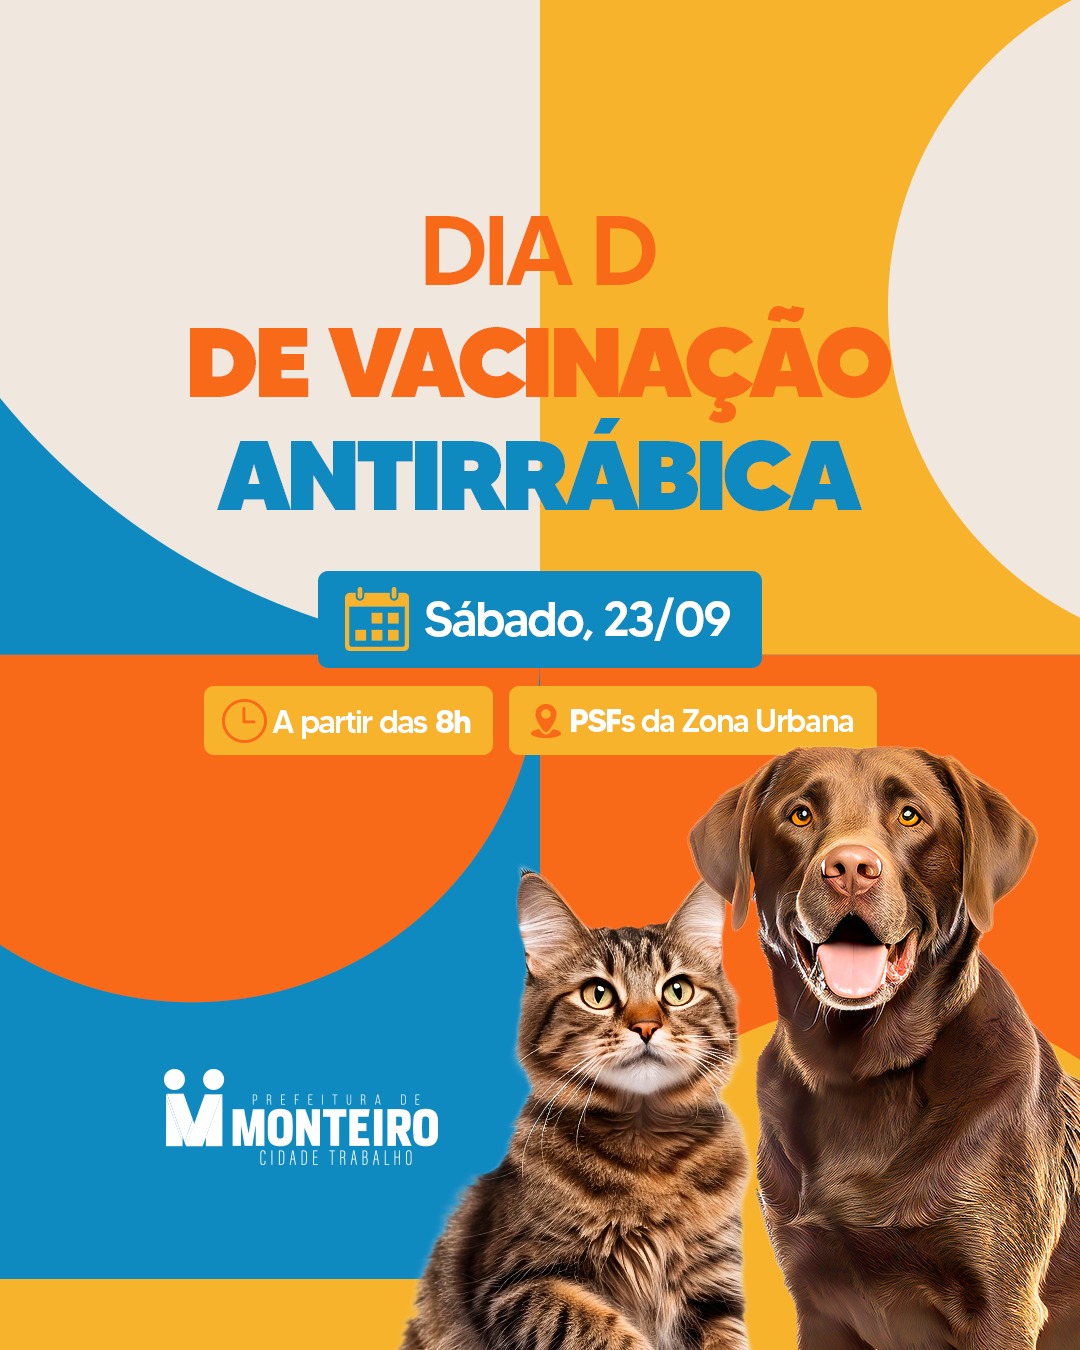 Dia D da Campanha de Vacinação Antirrábica será neste sábado em Monteiro